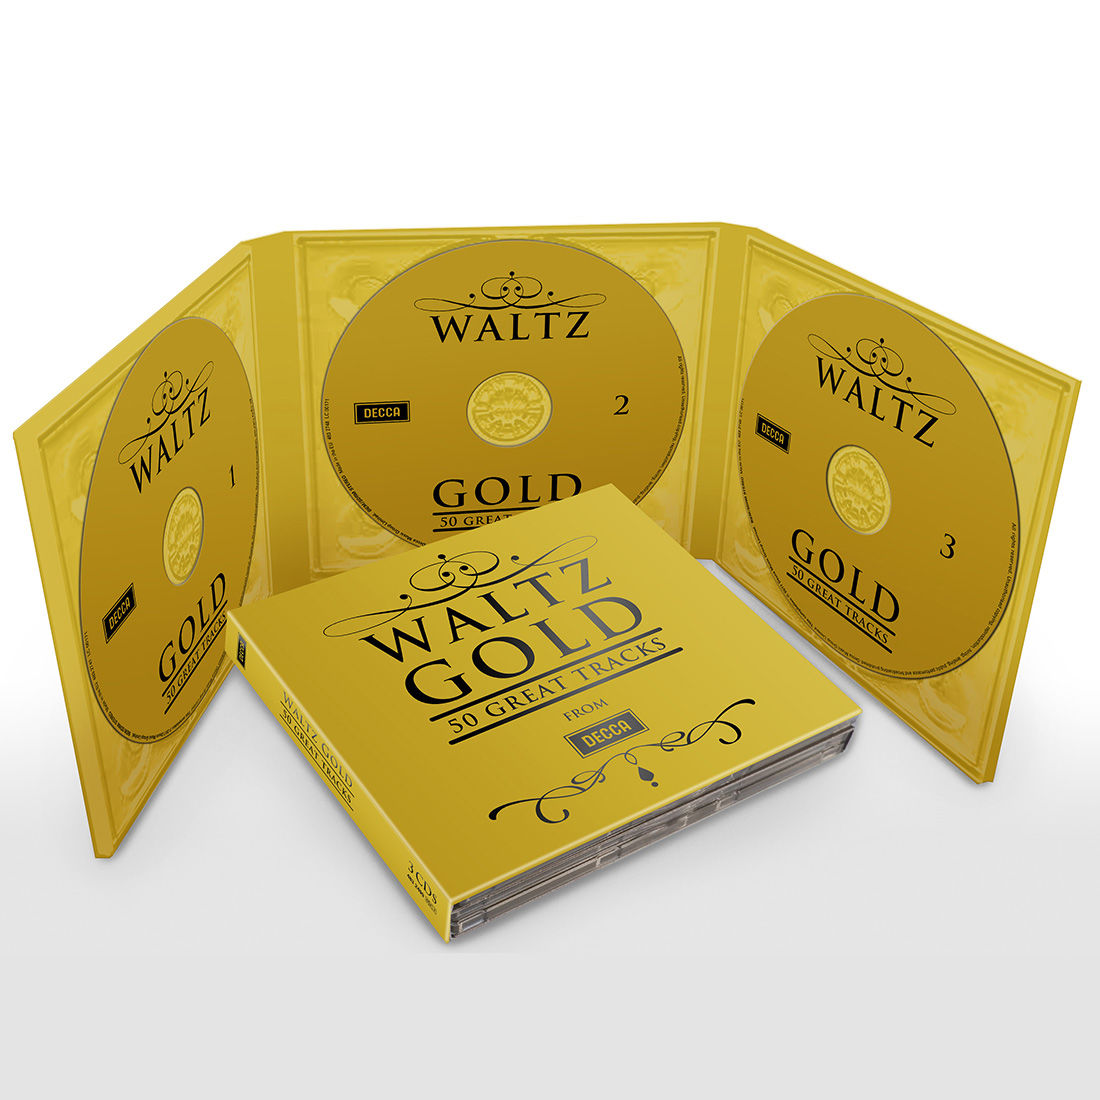 왈츠 골드 50 트랙스 (Waltz Gold - 50 Great Tracks)